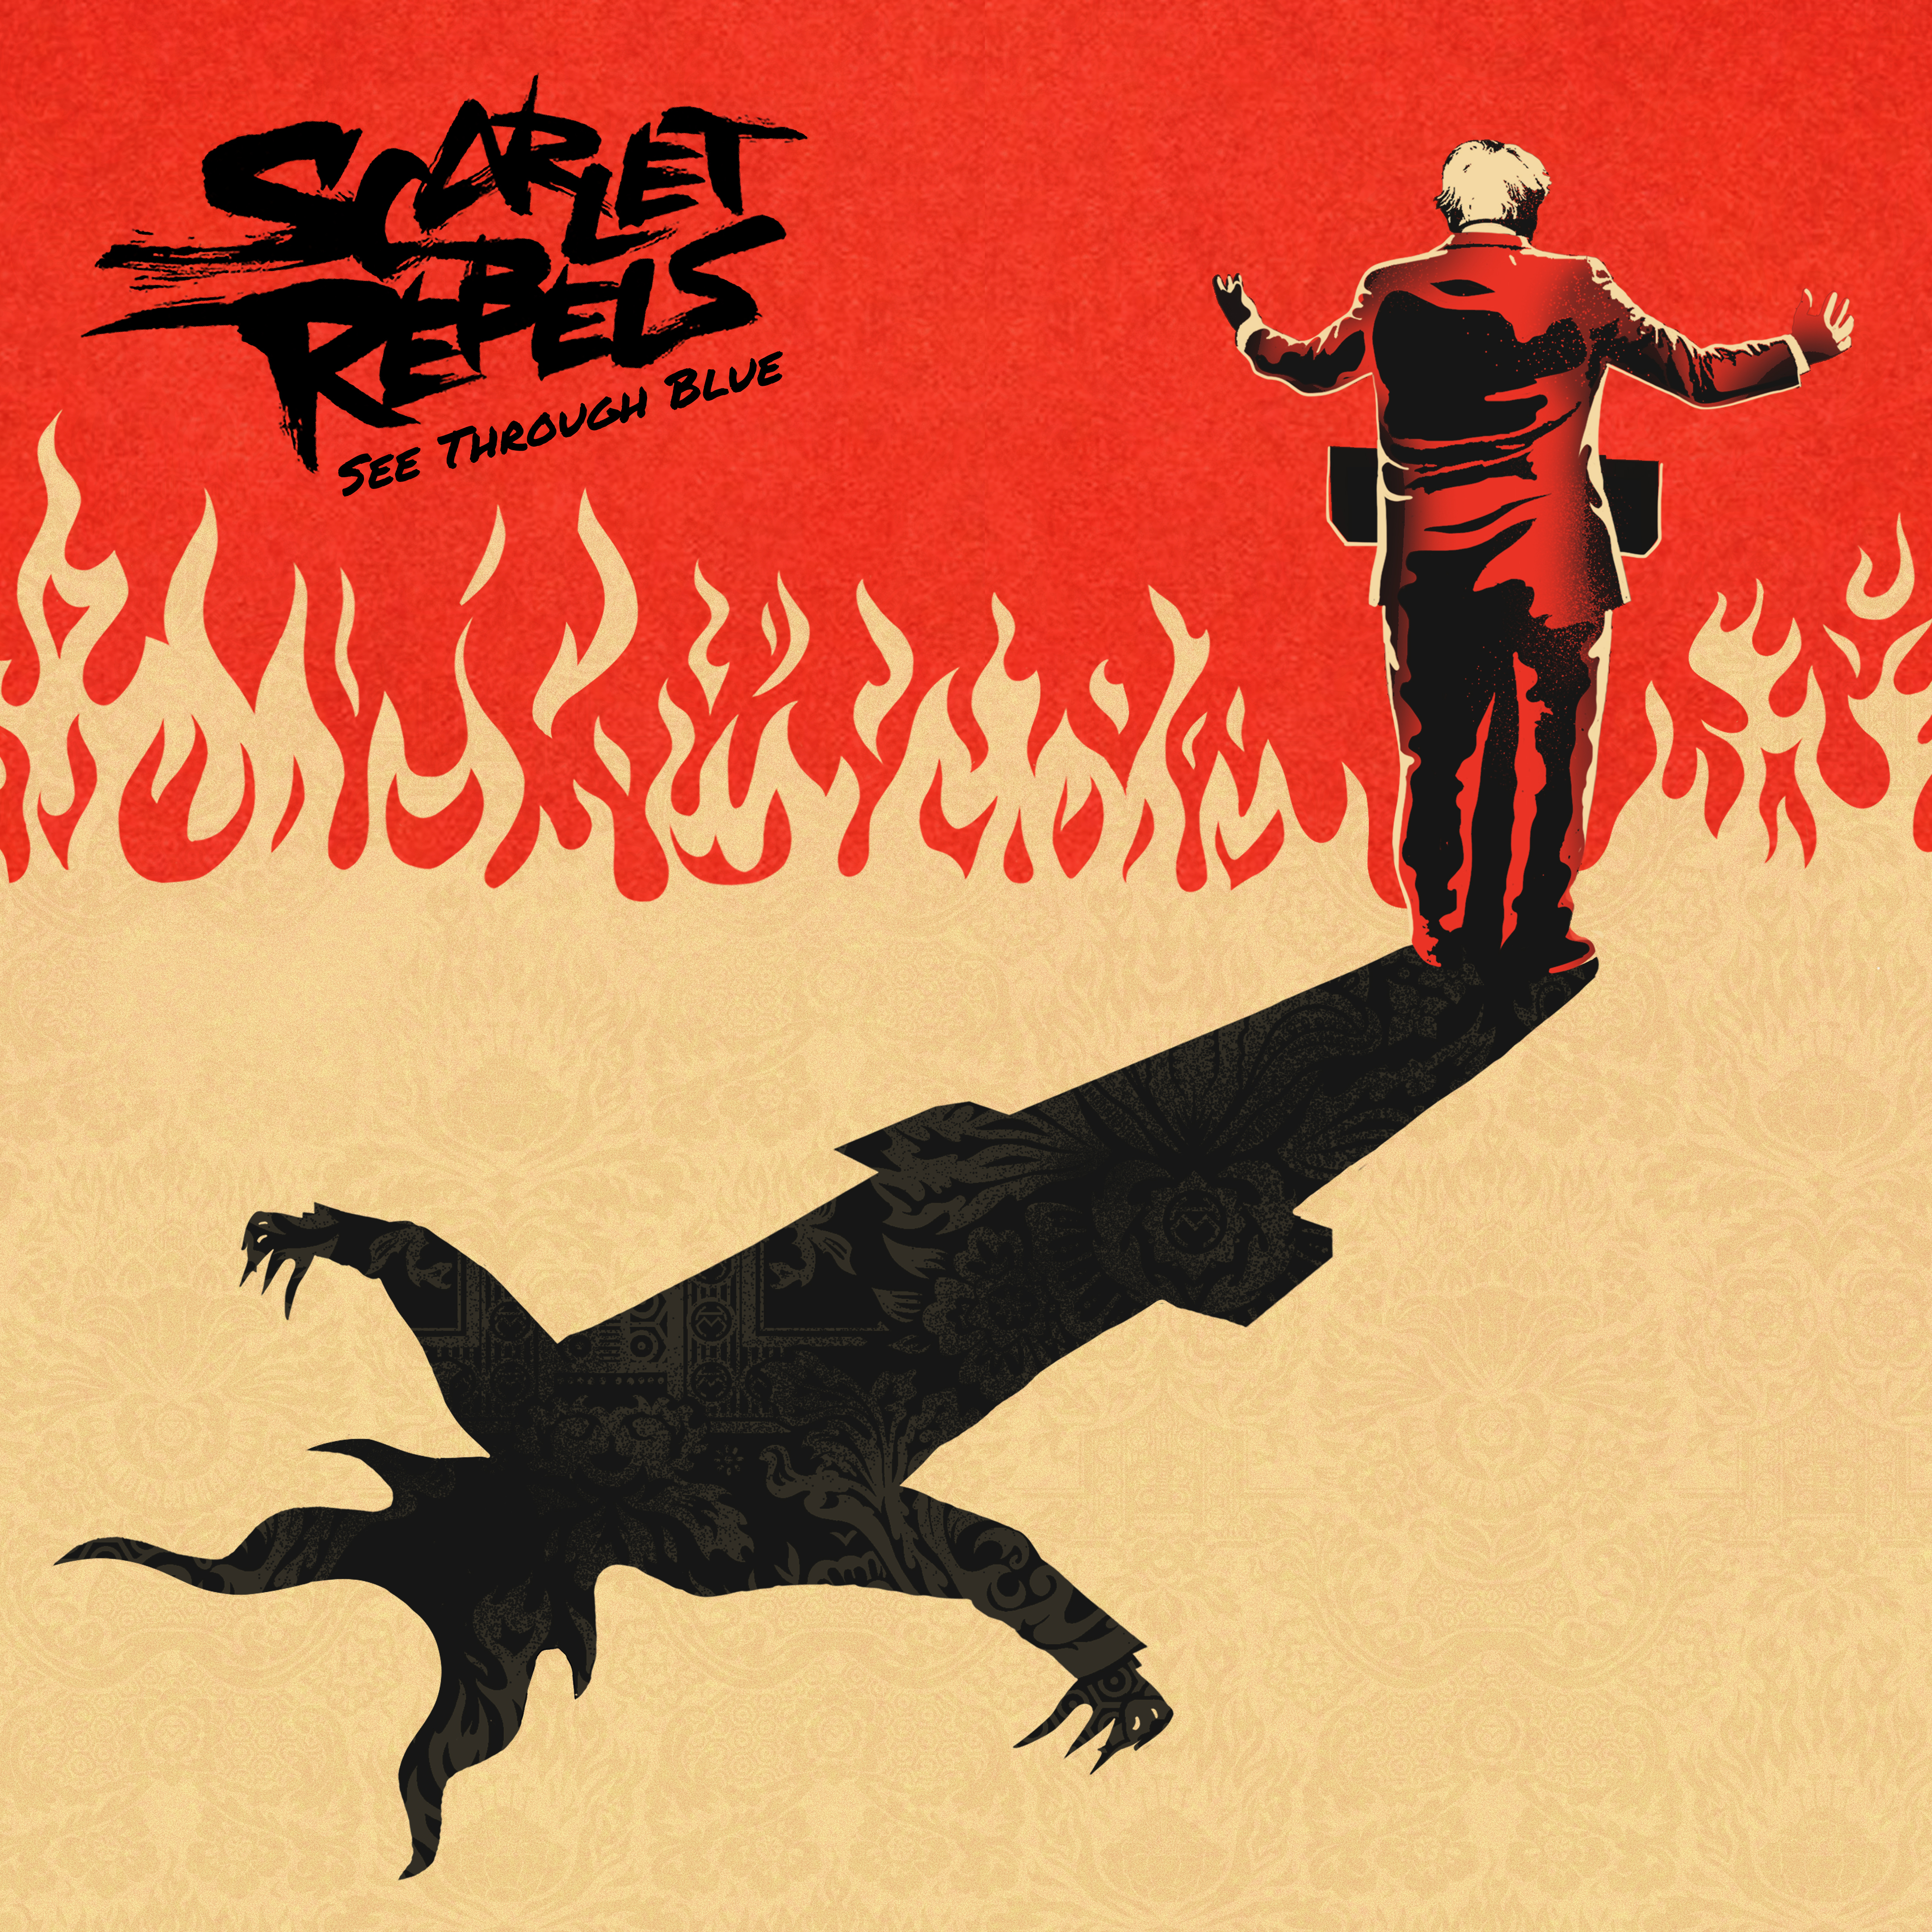 Scarlet Rebels See Through Blue (CD) Album Digipak - Afbeelding 1 van 1